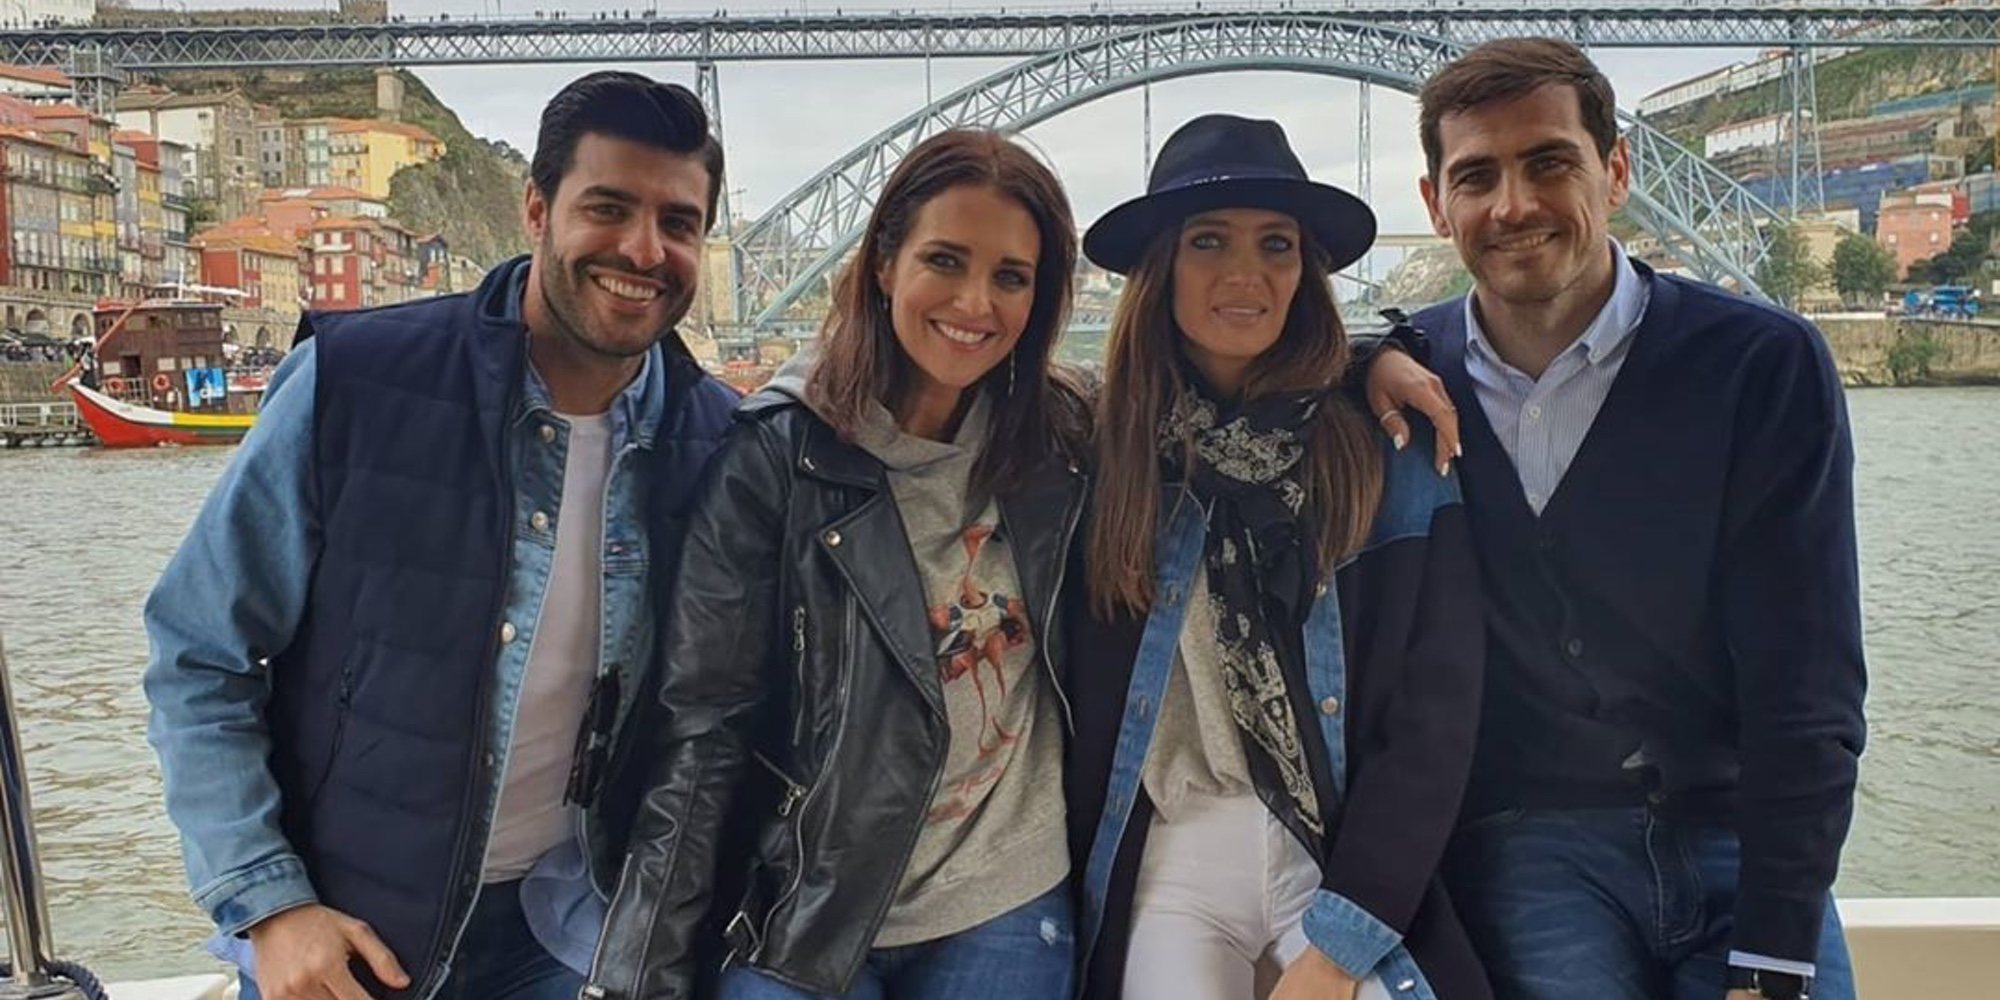 Sara Carbonero e Iker Casillas, los mejores anfitriones para Paula Echevarría y Miguel Torres en Oporto